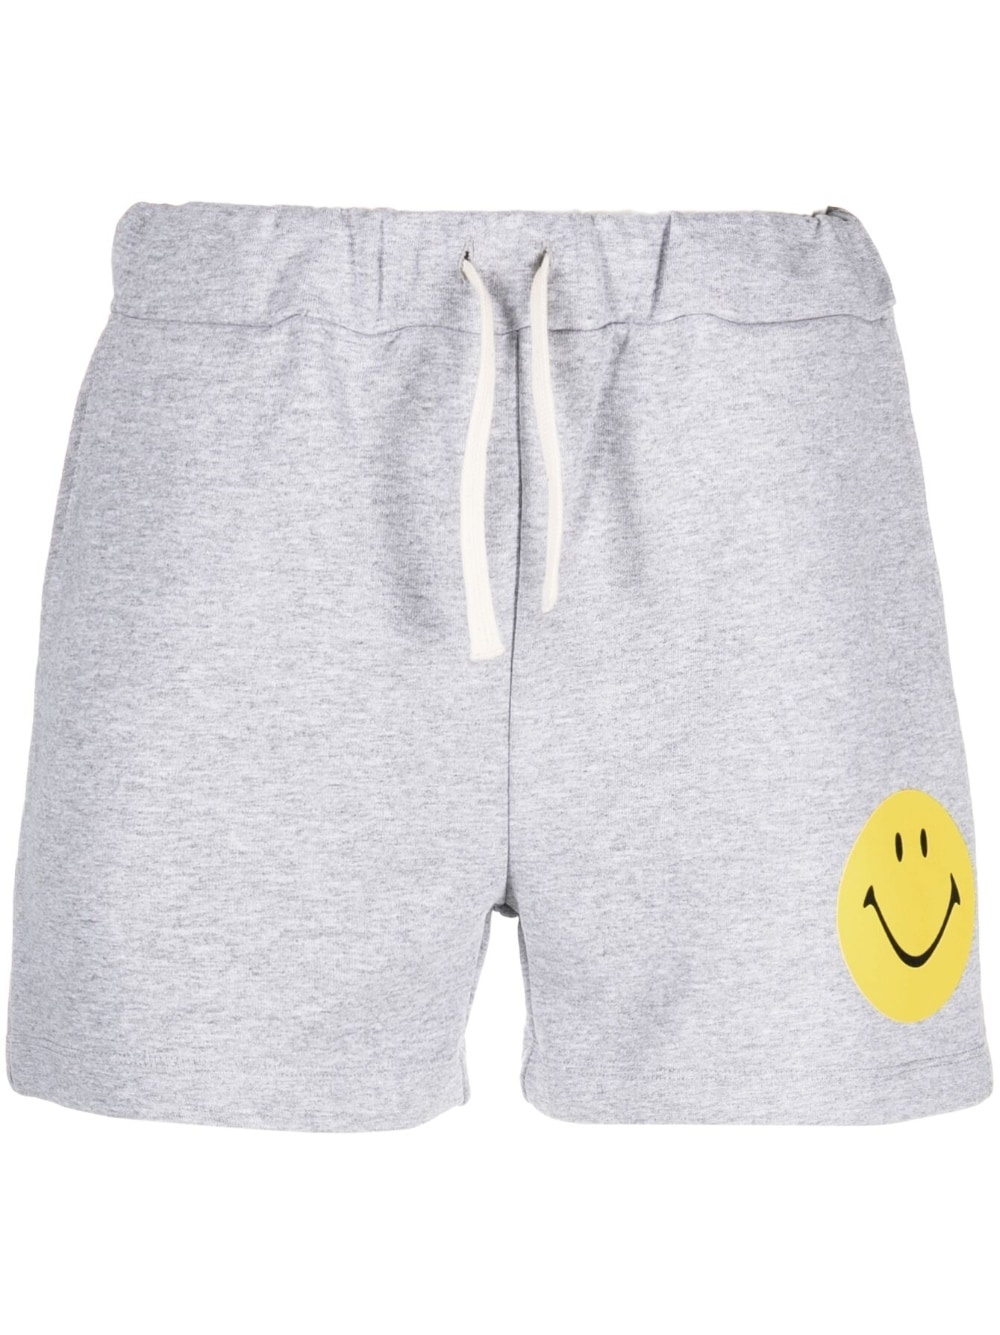 smiley-face print cotton shorts - 1